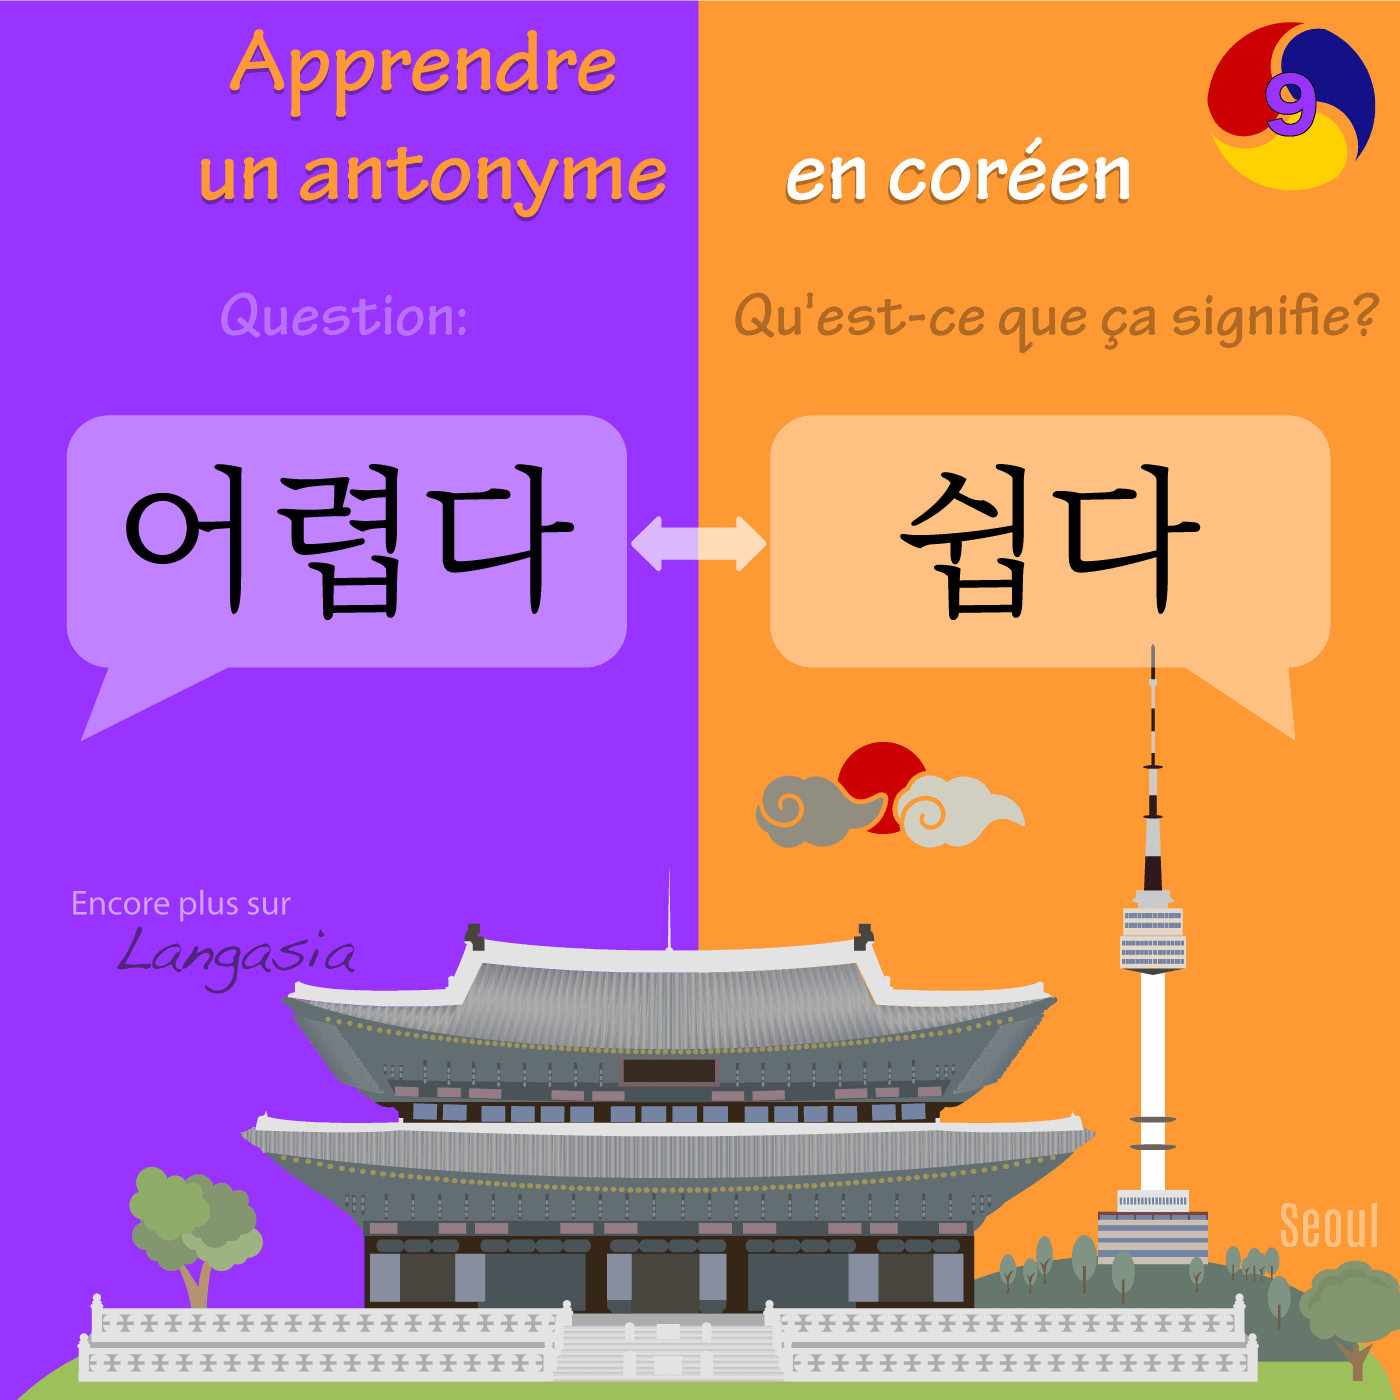 Antonyme en coréen - 어렵다 être difficile VS 쉽다 être facile